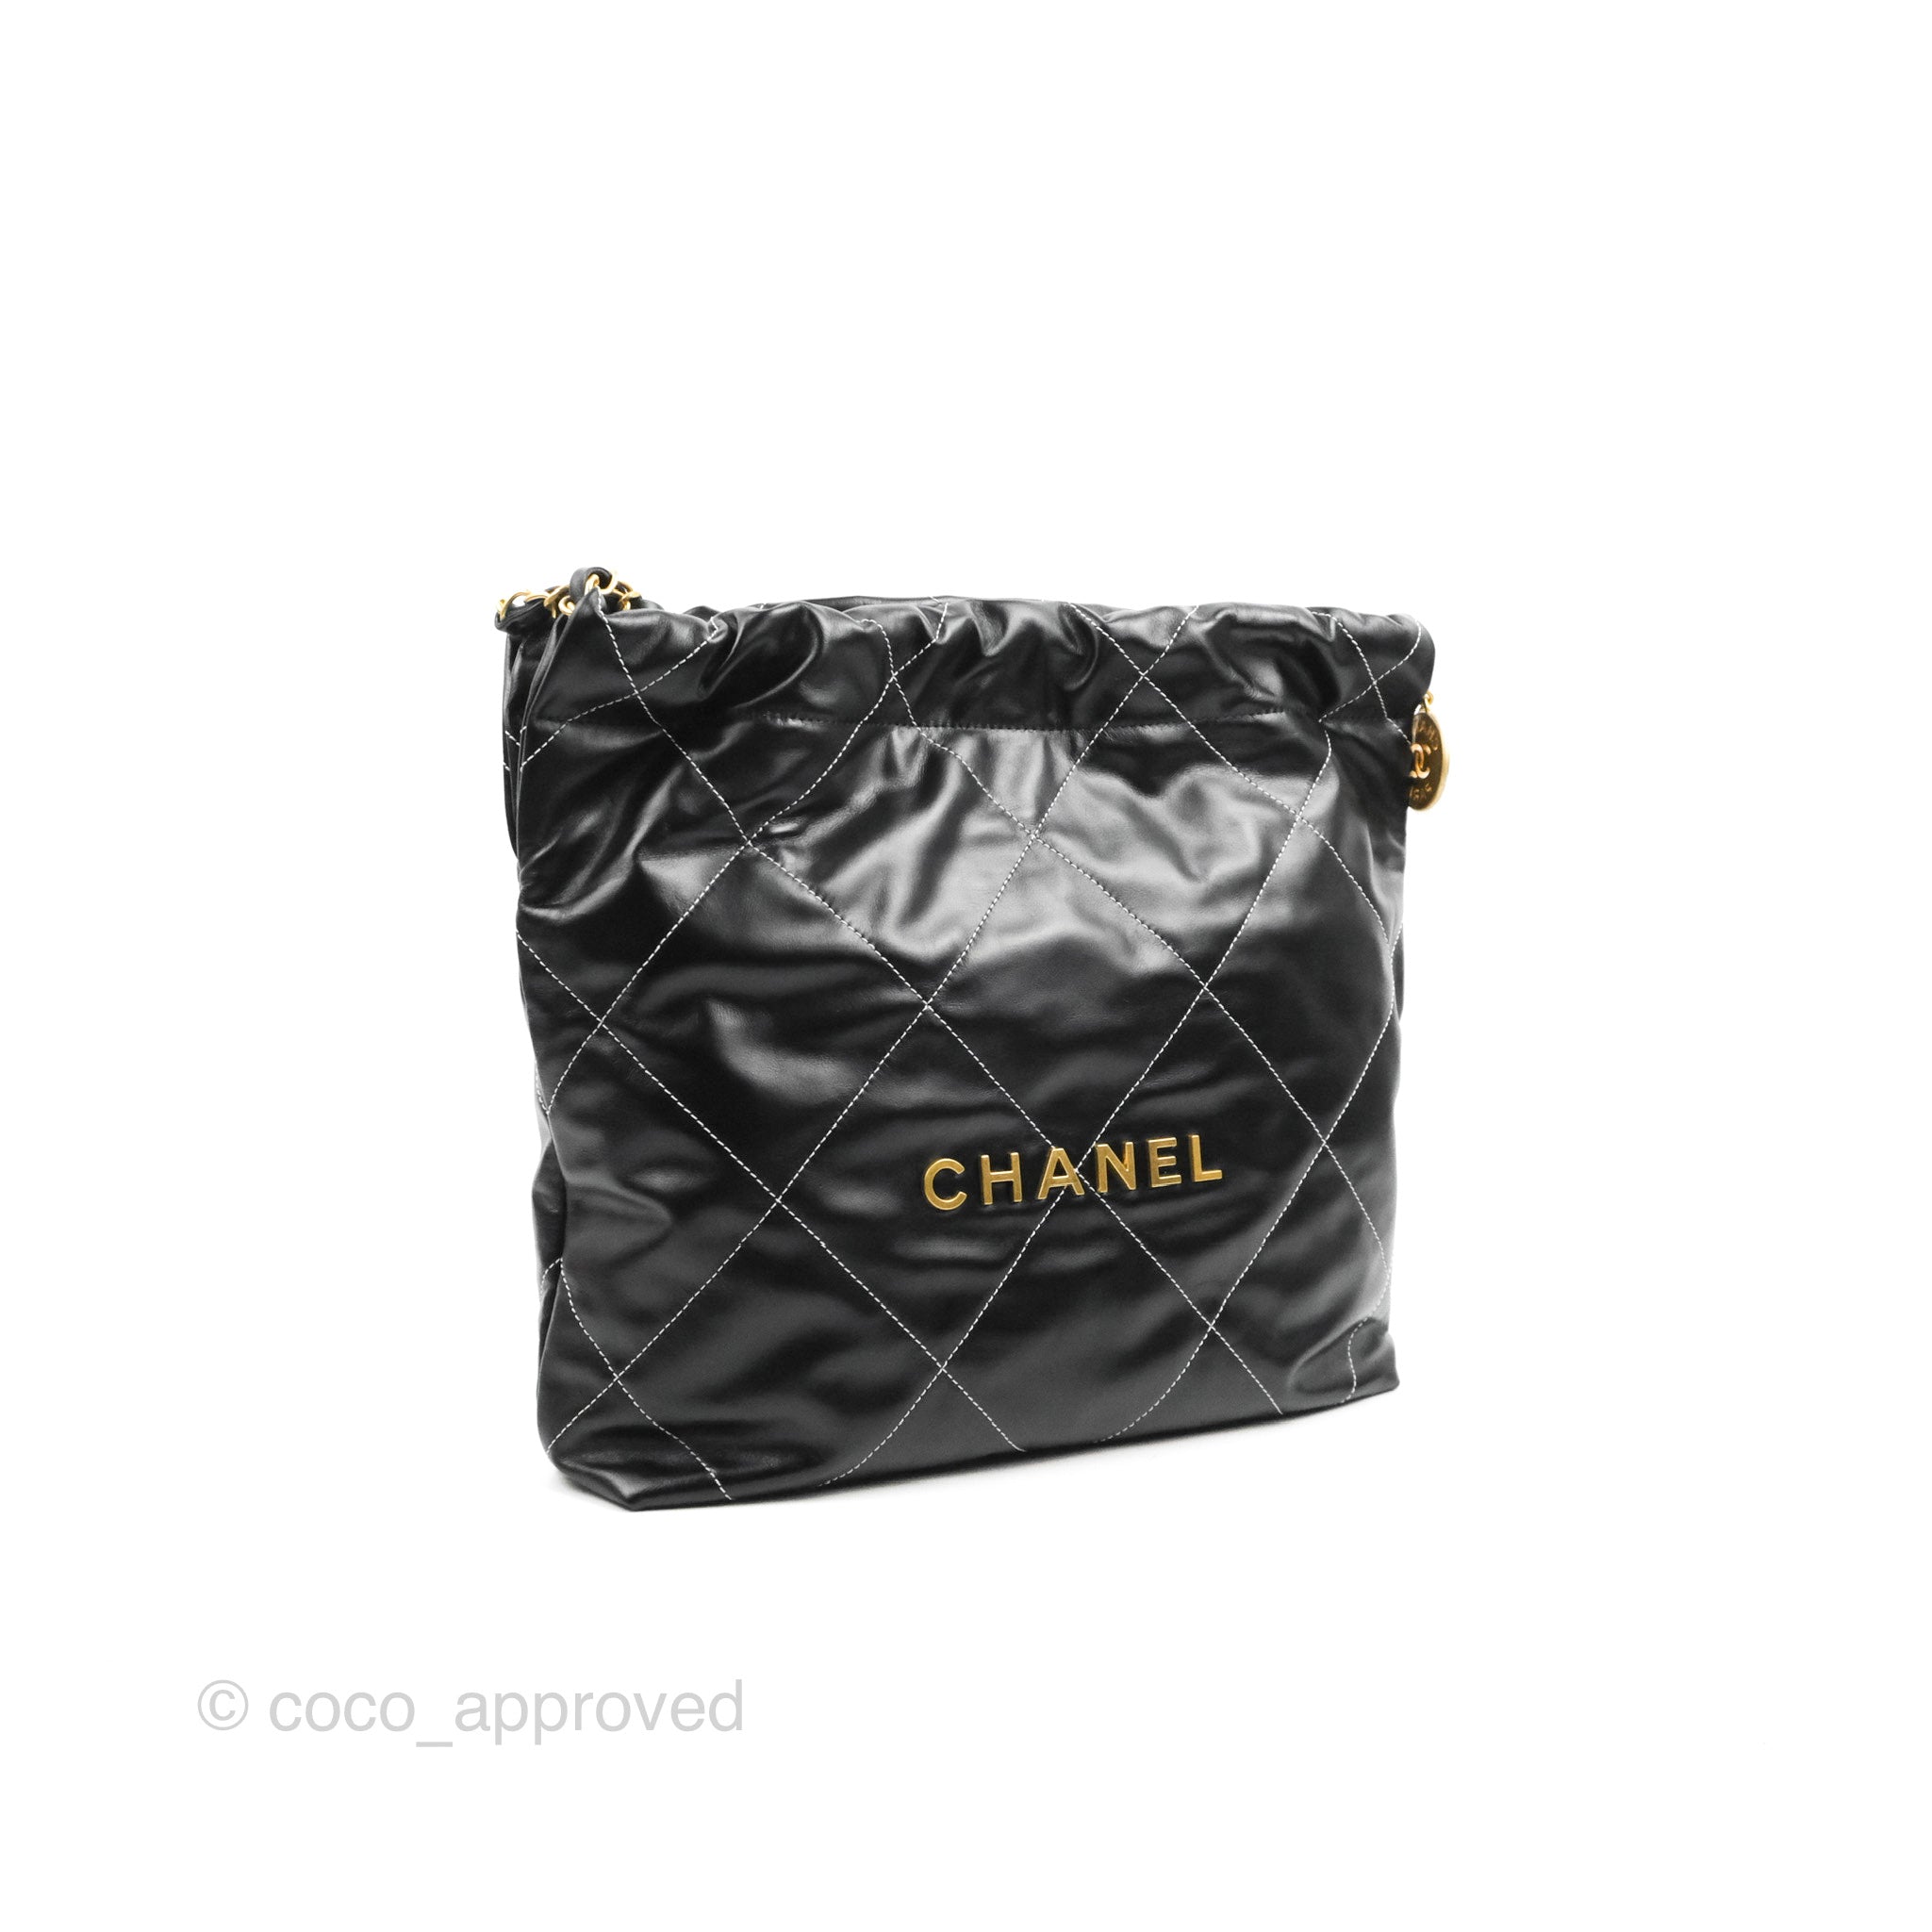 Chanel Chanel 22 Womens Handbags, Black